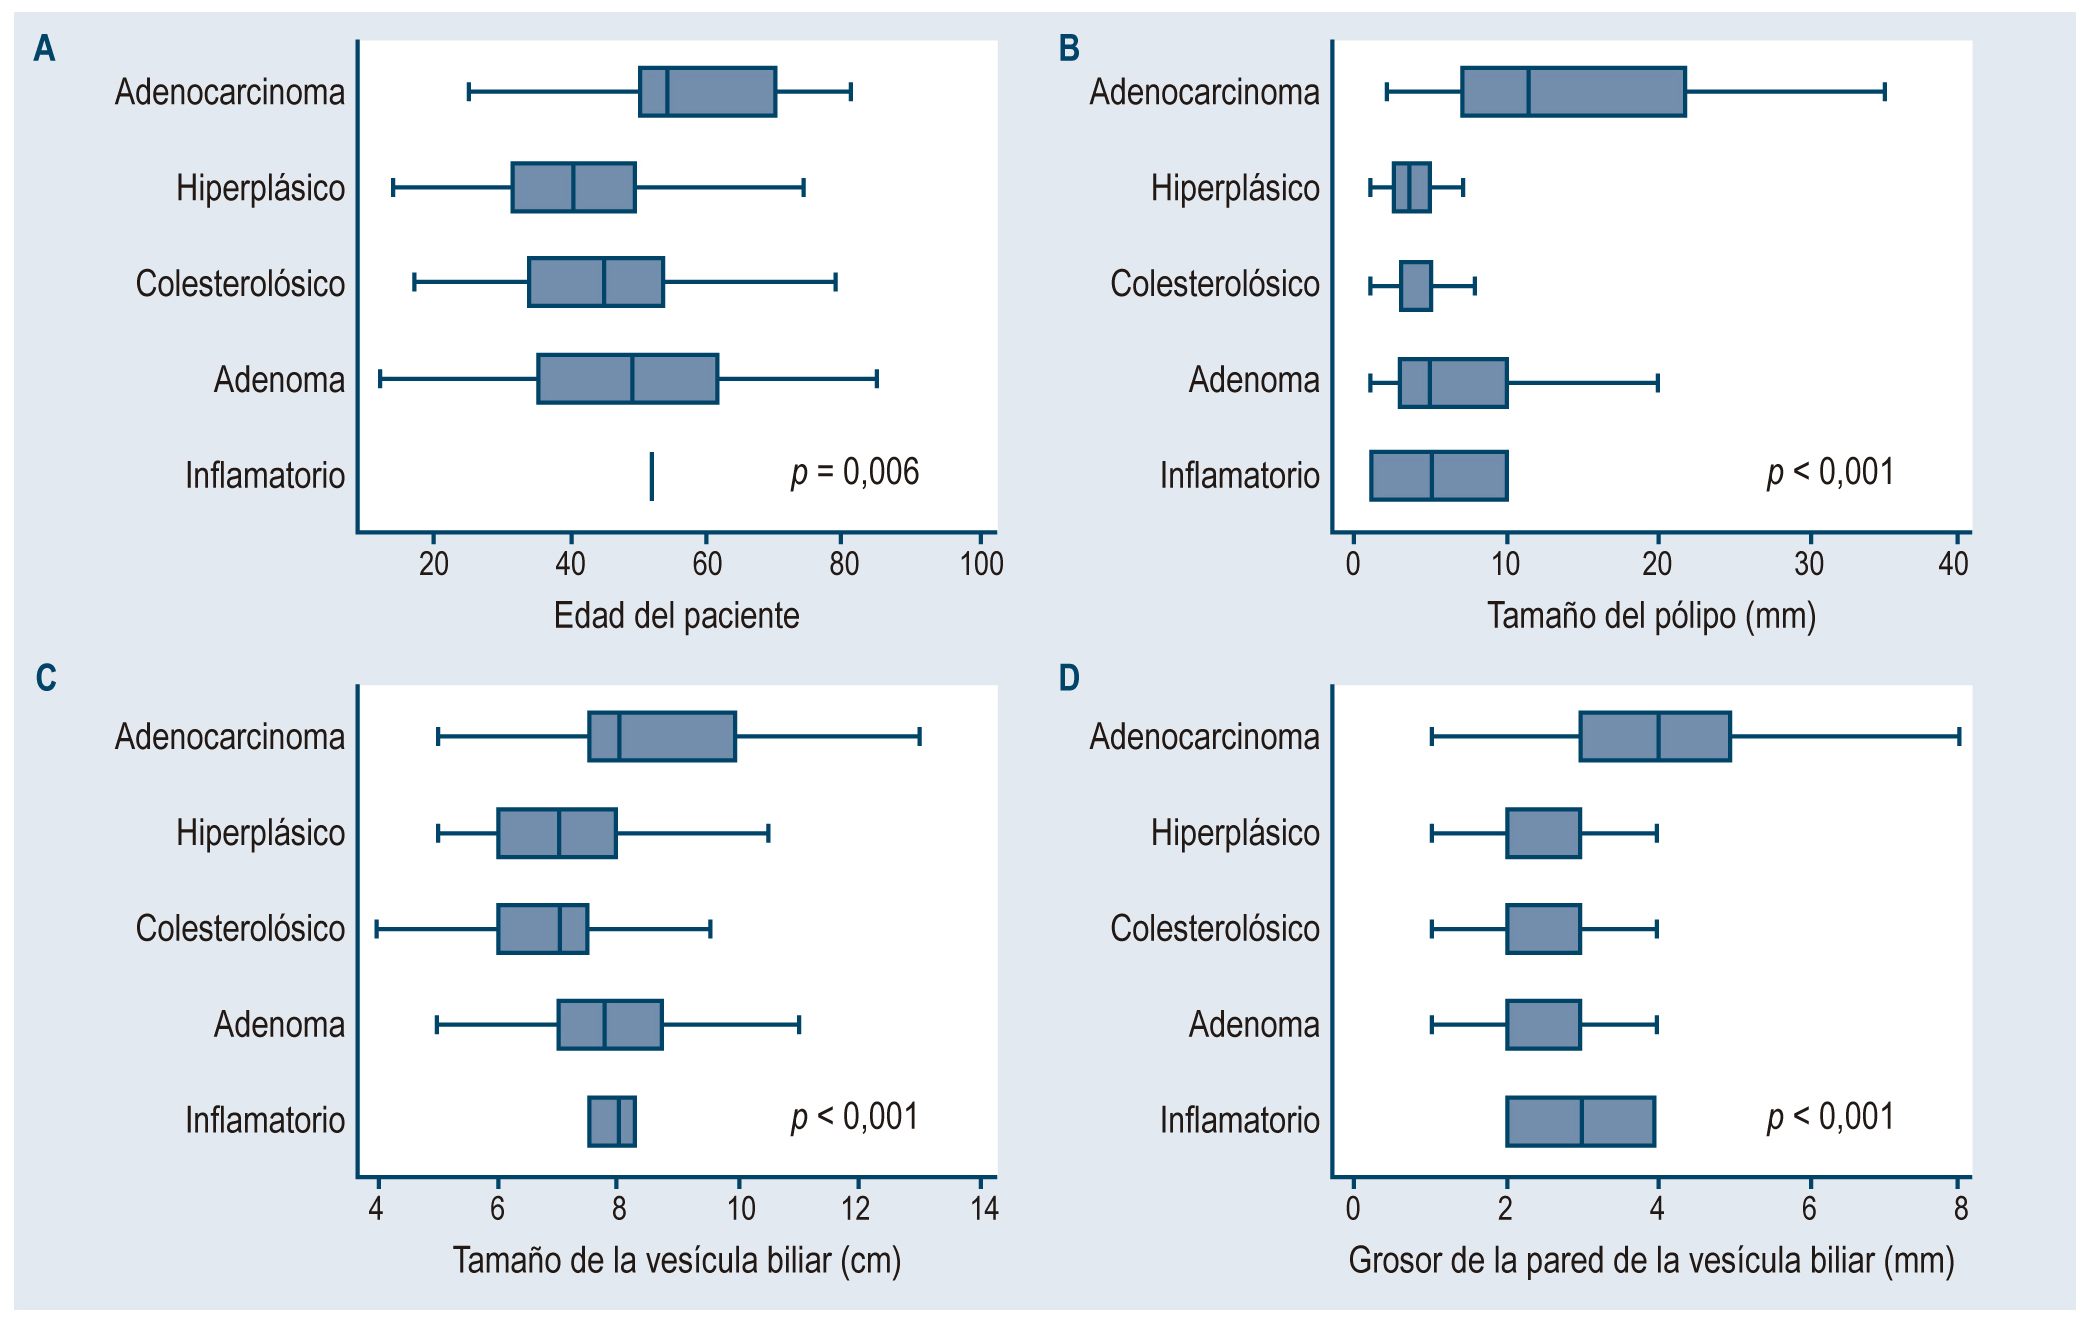 Figura 1. Diferencias de valores según el tipo de pólipo vesicular en pacientes colecistectomizados en dos hospitales de Lima y Callao